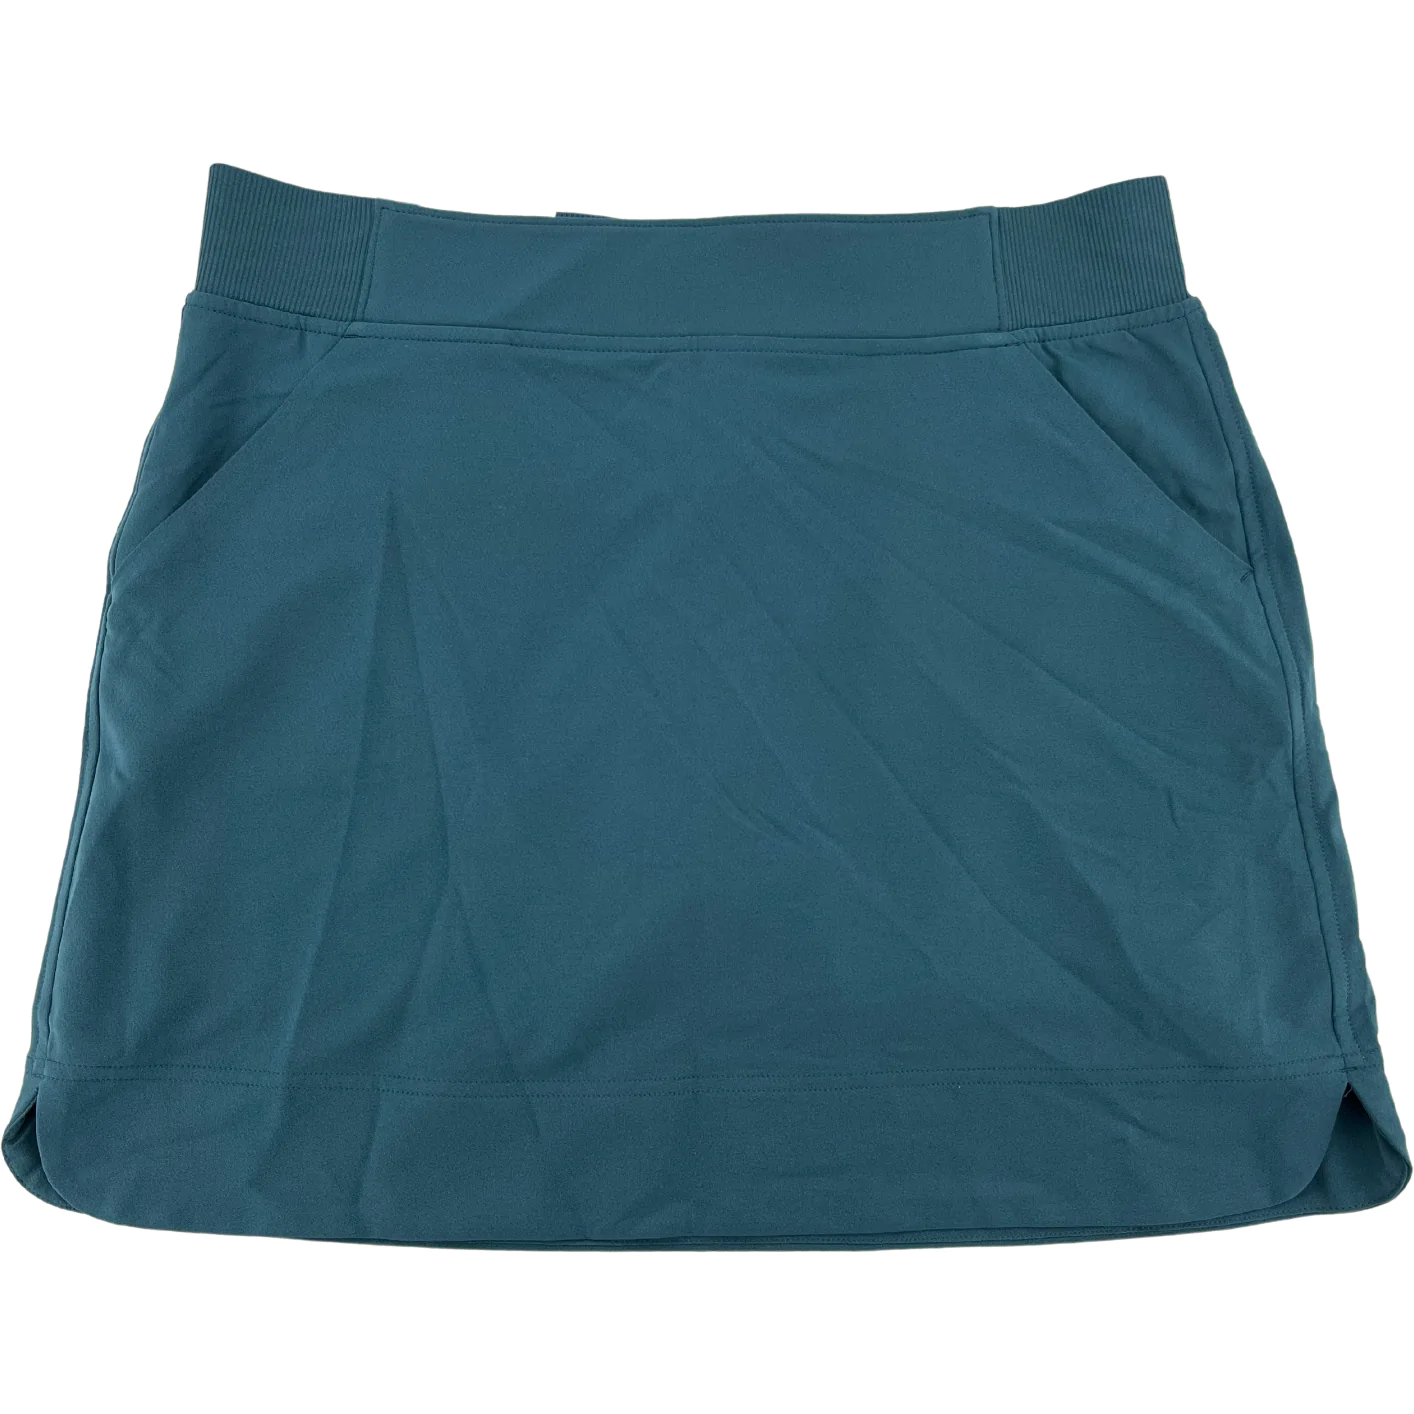 32 Degree Cool Women's Skirt: Women's Skort / Teal / Various Sizes